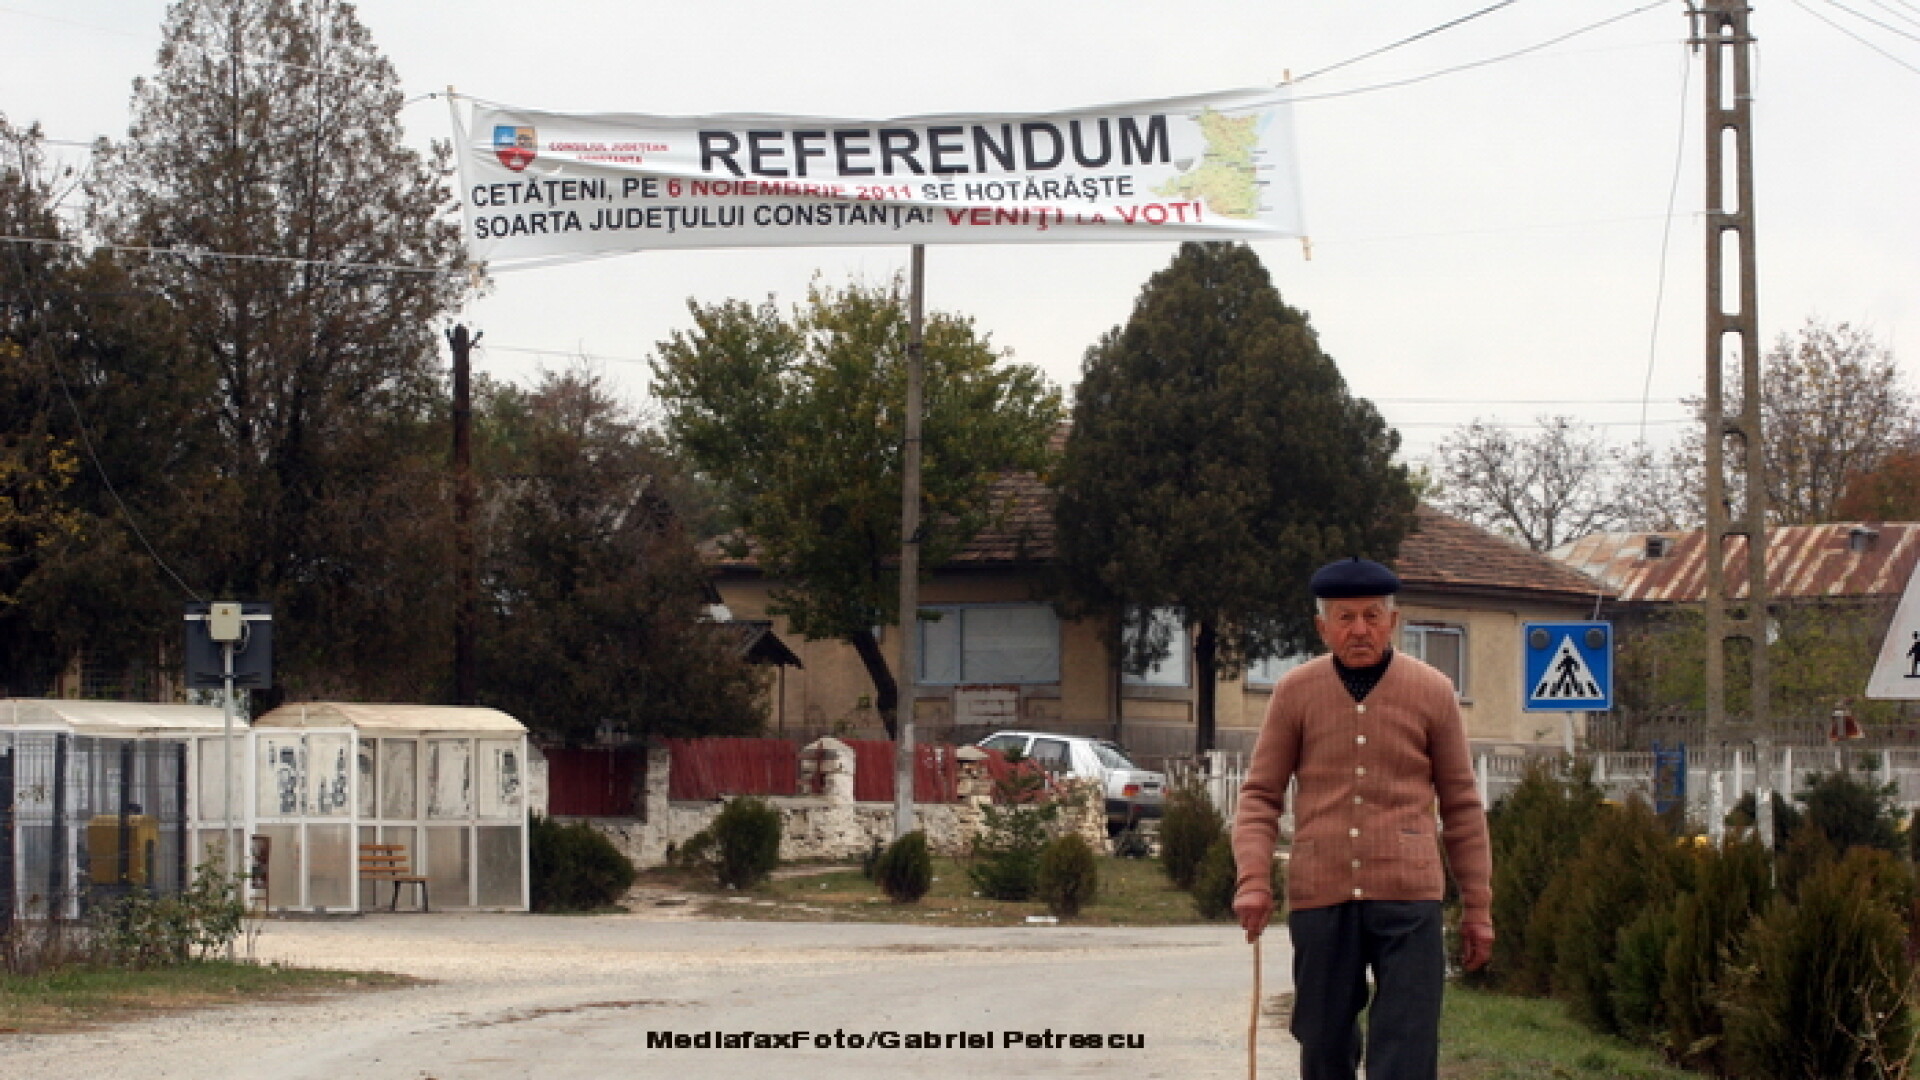 Referendum in Constanta